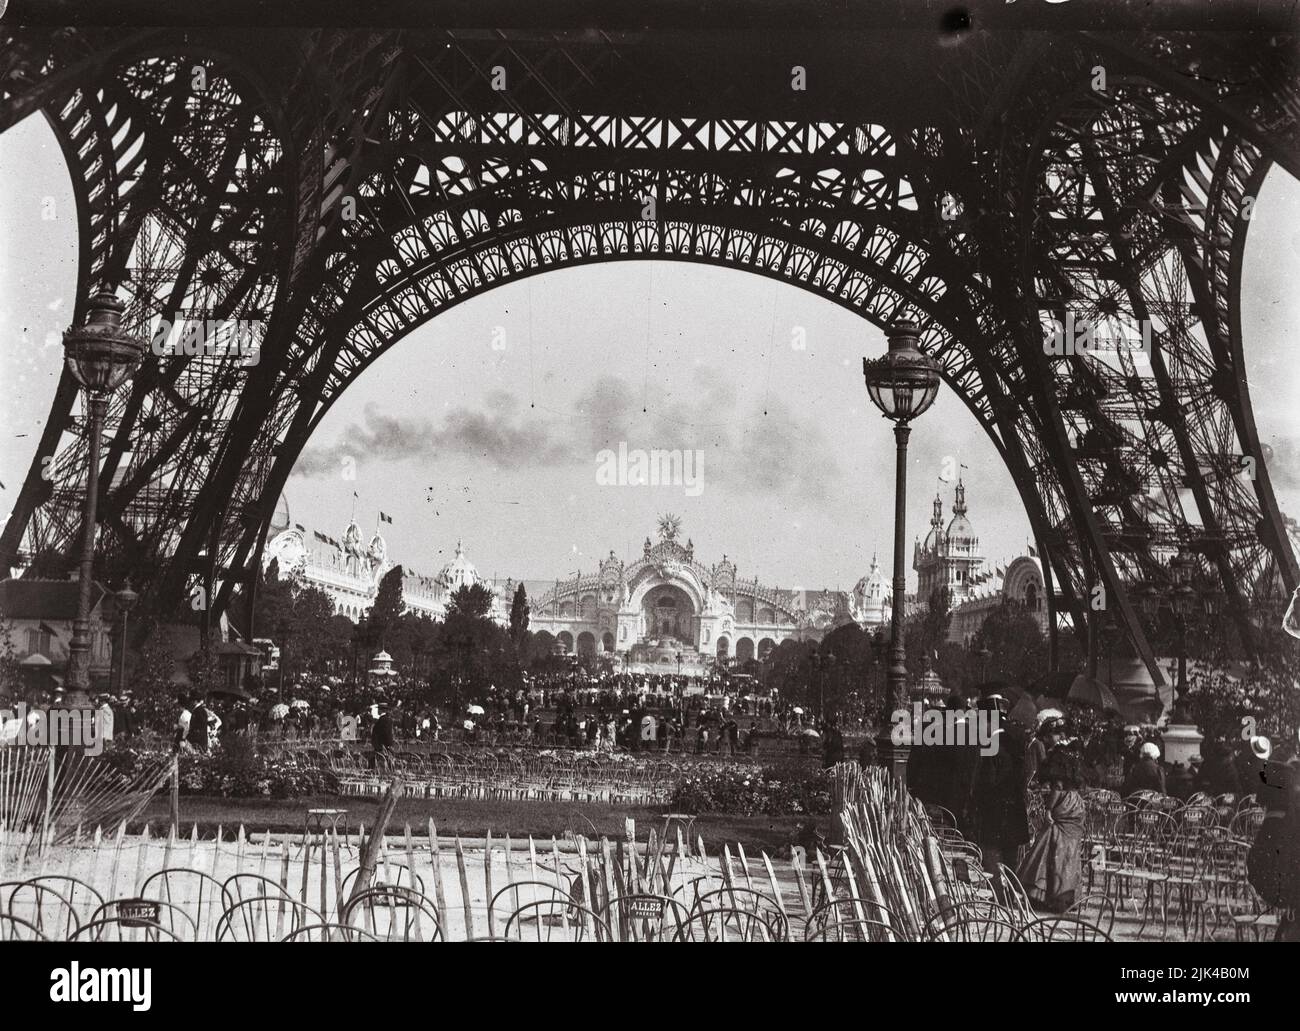 Paris World Fair in 1900 : the Palace of Electricity seen from the foot of the Eiffel Tower - Exposition Universelle de Paris 1900 (le palais de l'électricité vu des pieds de la tour Eiffel) Stock Photo